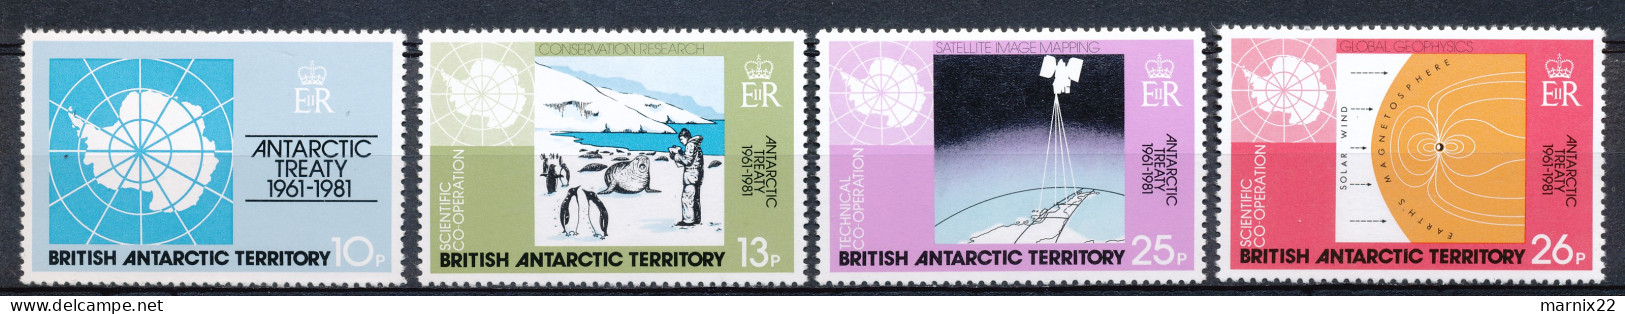 BRITISH ANTARCTIC TERRITORY 1981 ANTARCTIC TREATY 1961-1981 SCIENTIFIC-/SCIENTIFIC/TECHNICAL CO-OPERATION          Hk713 - Ongebruikt